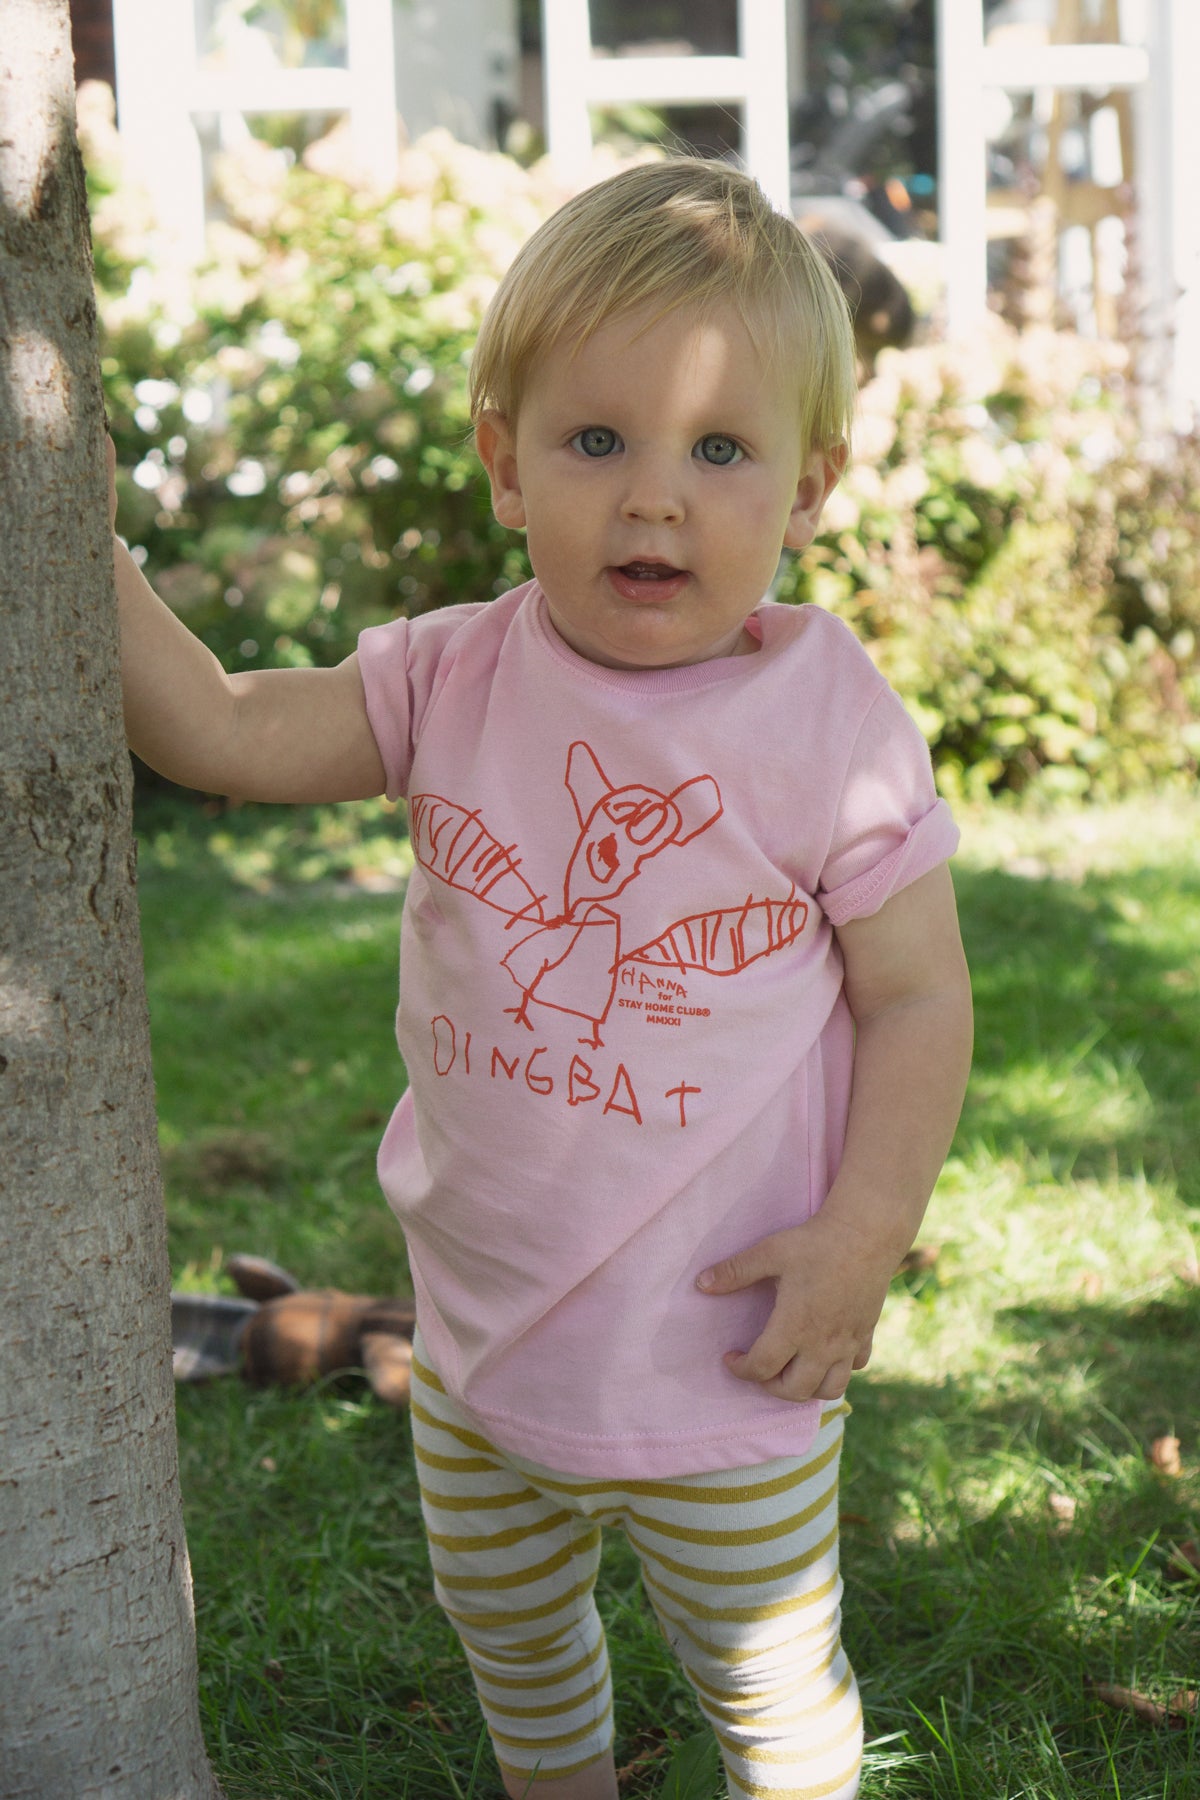 Dingbat Toddler T-Shirt